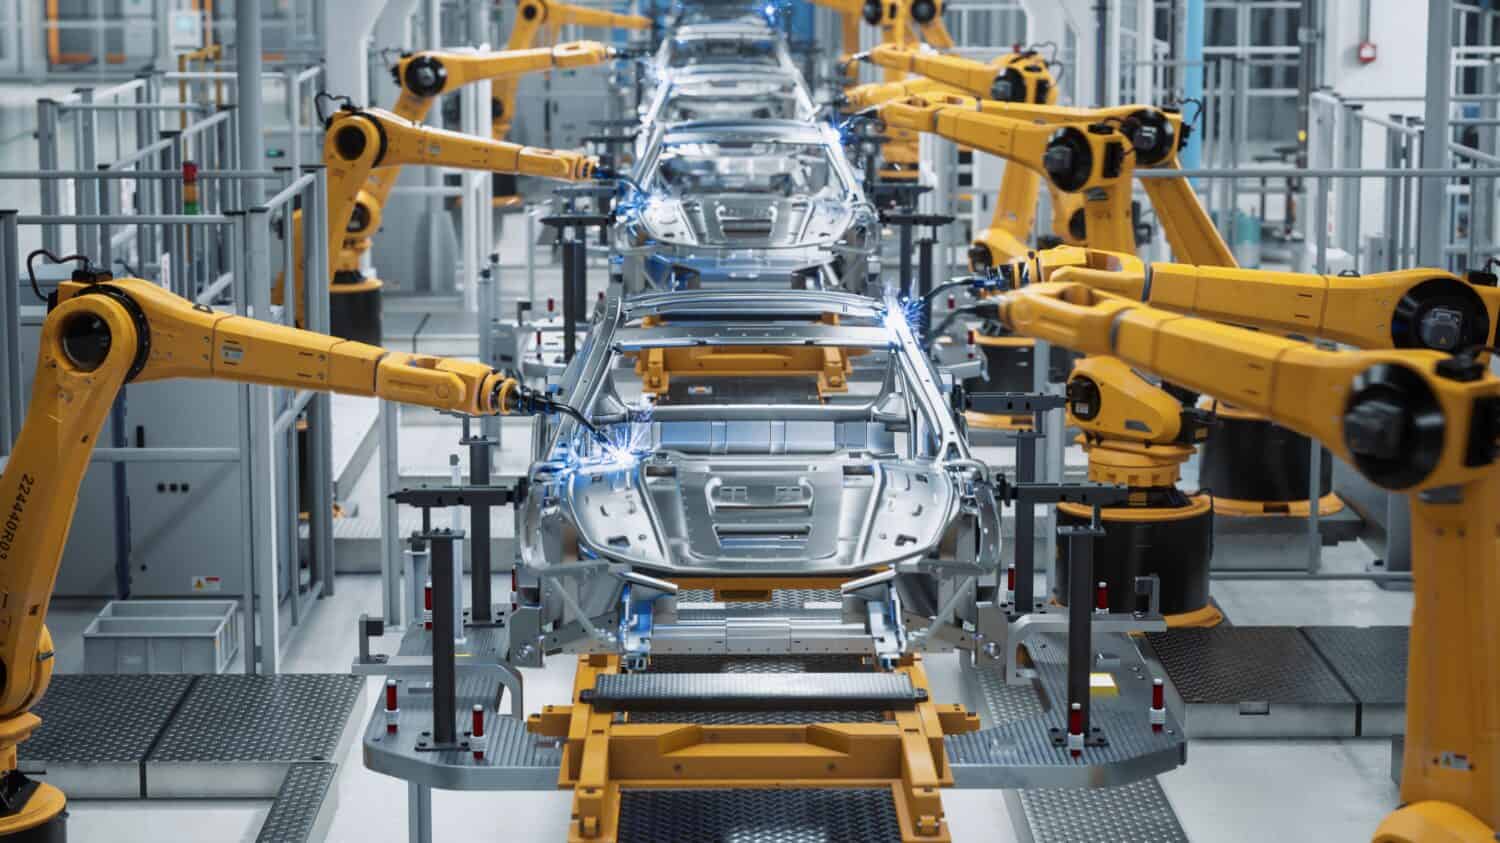 Concetto 3D di fabbrica di automobili: catena di montaggio automatizzata del braccio robotico che produce veicoli elettrici ad alta tecnologia a energia verde.  Costruzione automatica, edilizia, trasportatore di produzione industriale di saldatura.  Vista frontale